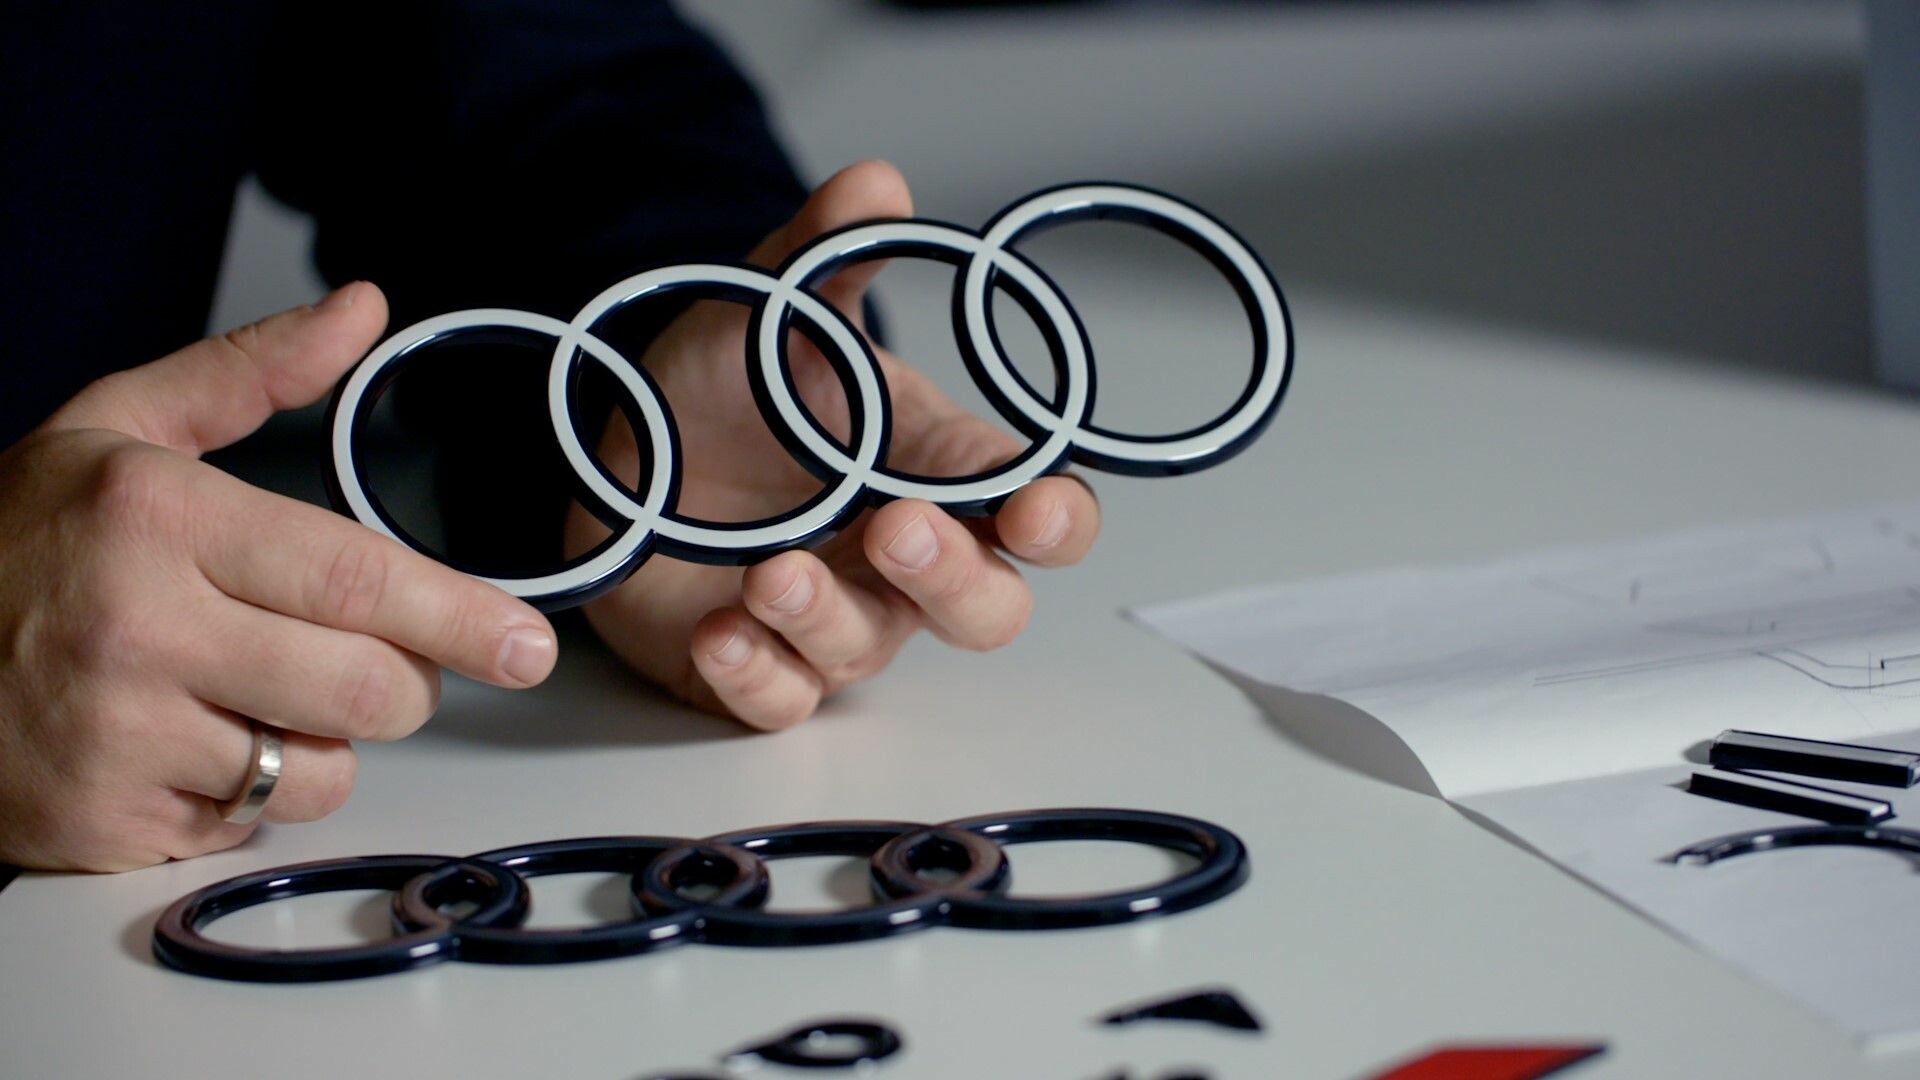 Les nouveaux anneaux Audi : plus épurés pour un design progressif - Audi  France Media